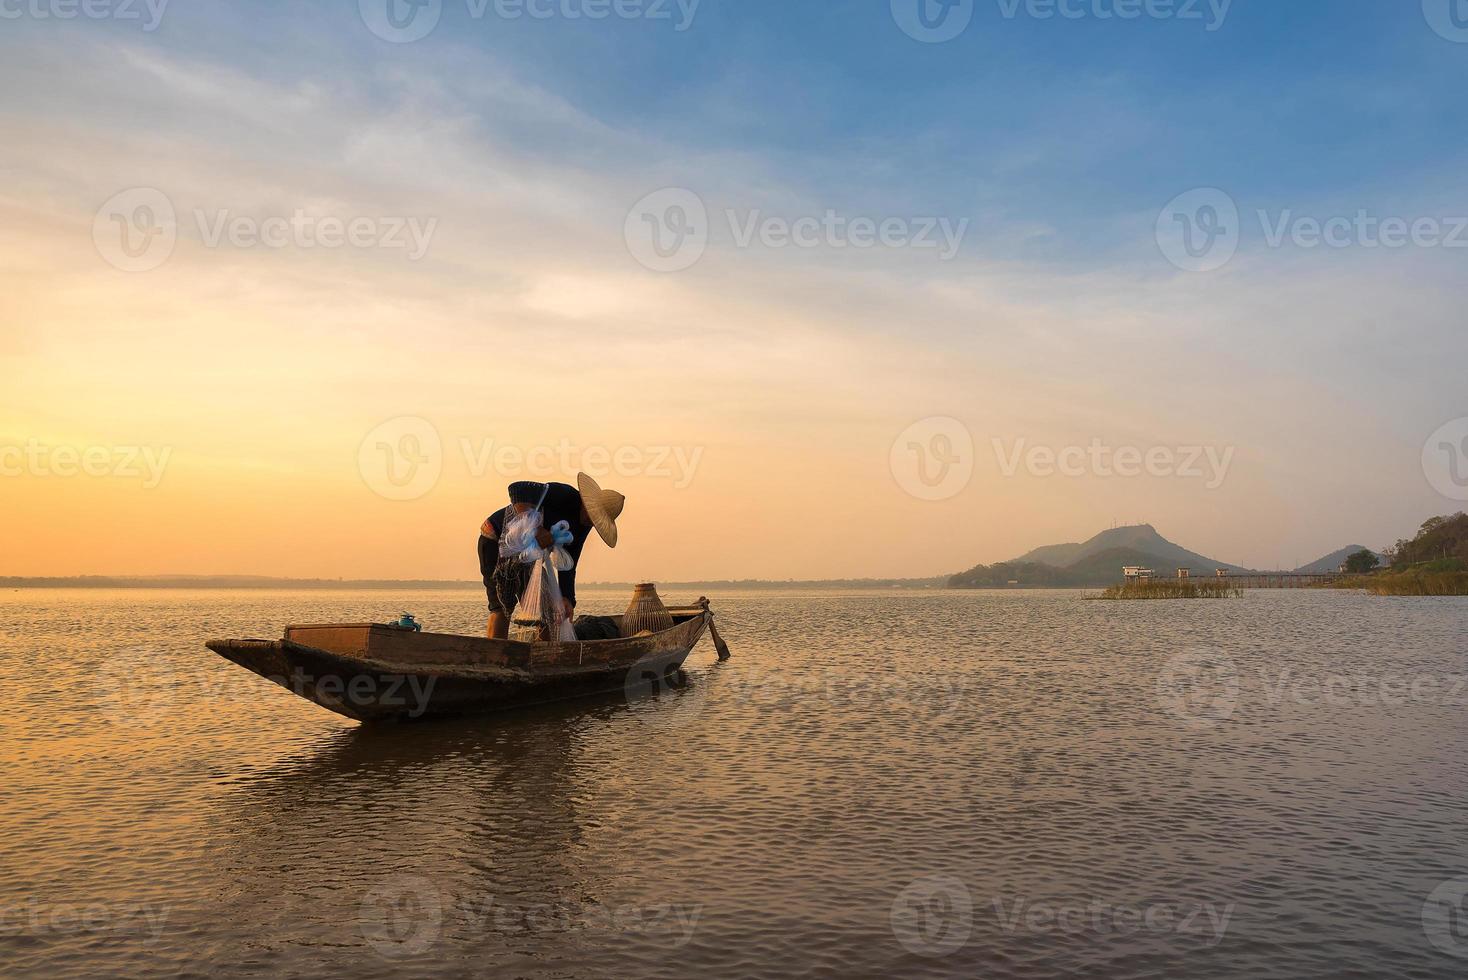 Pescador asiático en bote de madera preparando una red para pescar peces de agua dulce en el río natural temprano en la mañana antes del amanecer foto